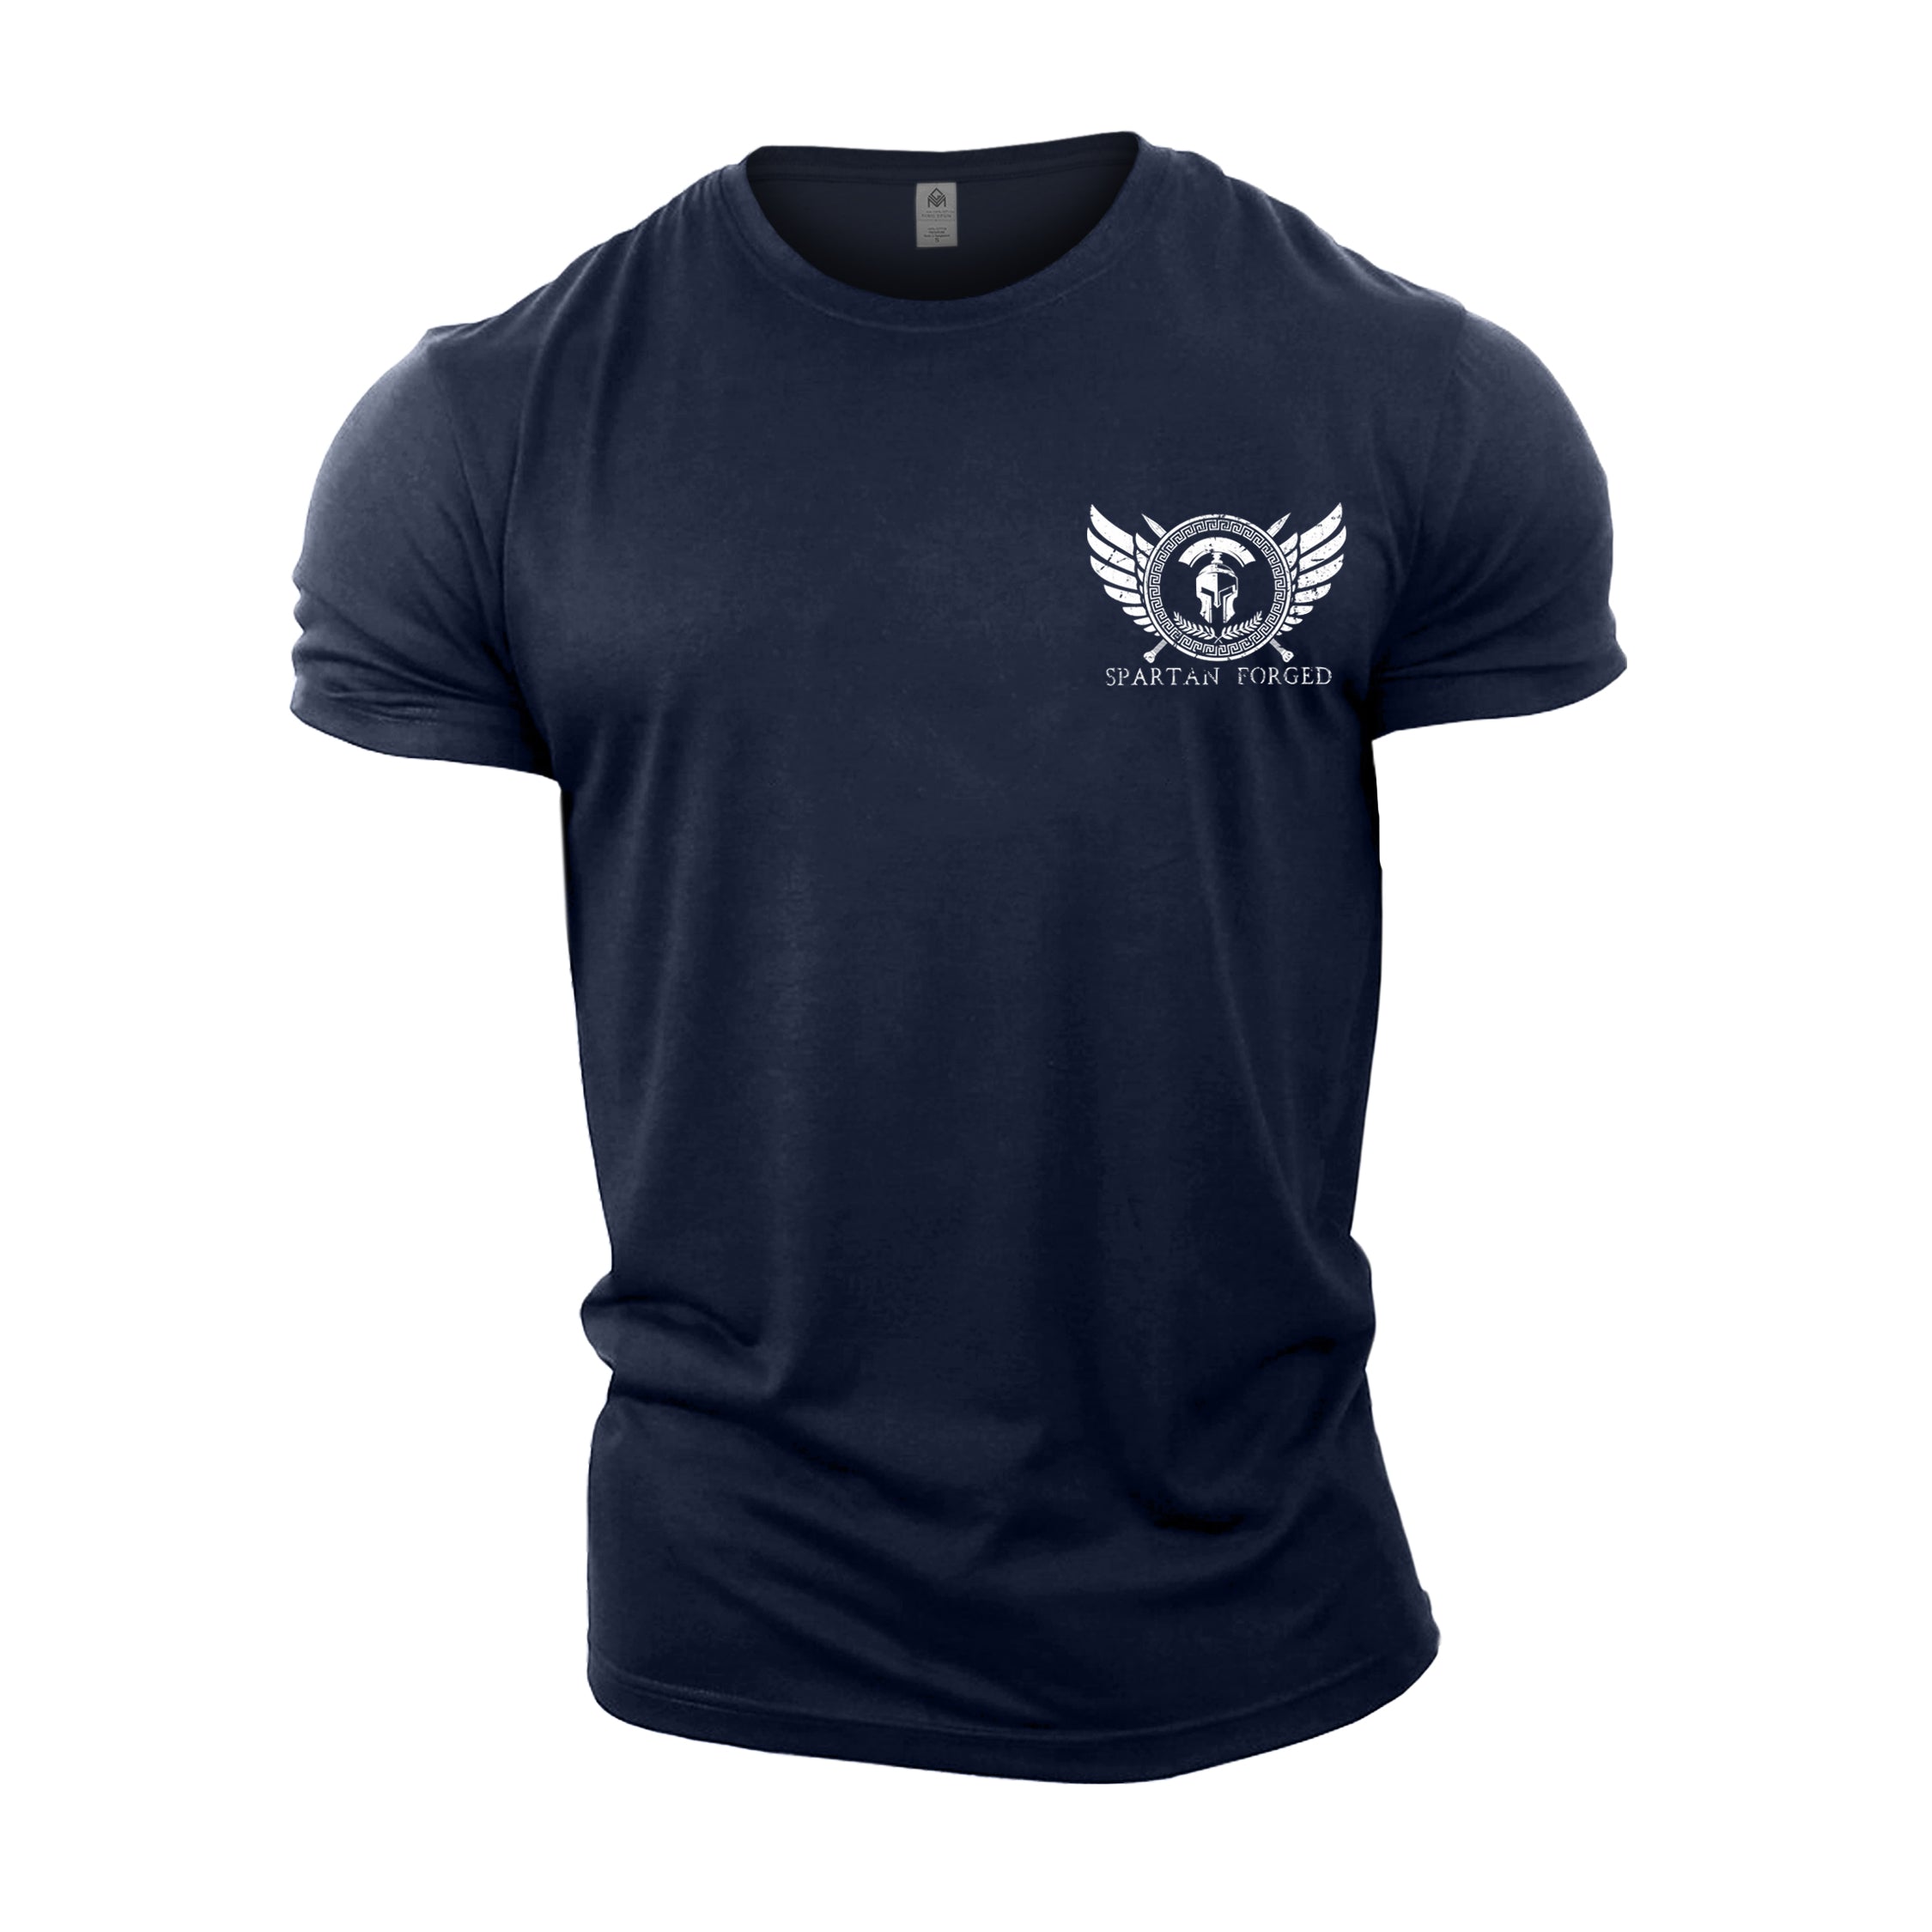 Spartan Forged Logo - Spartan Forged - Gym T-Shirt